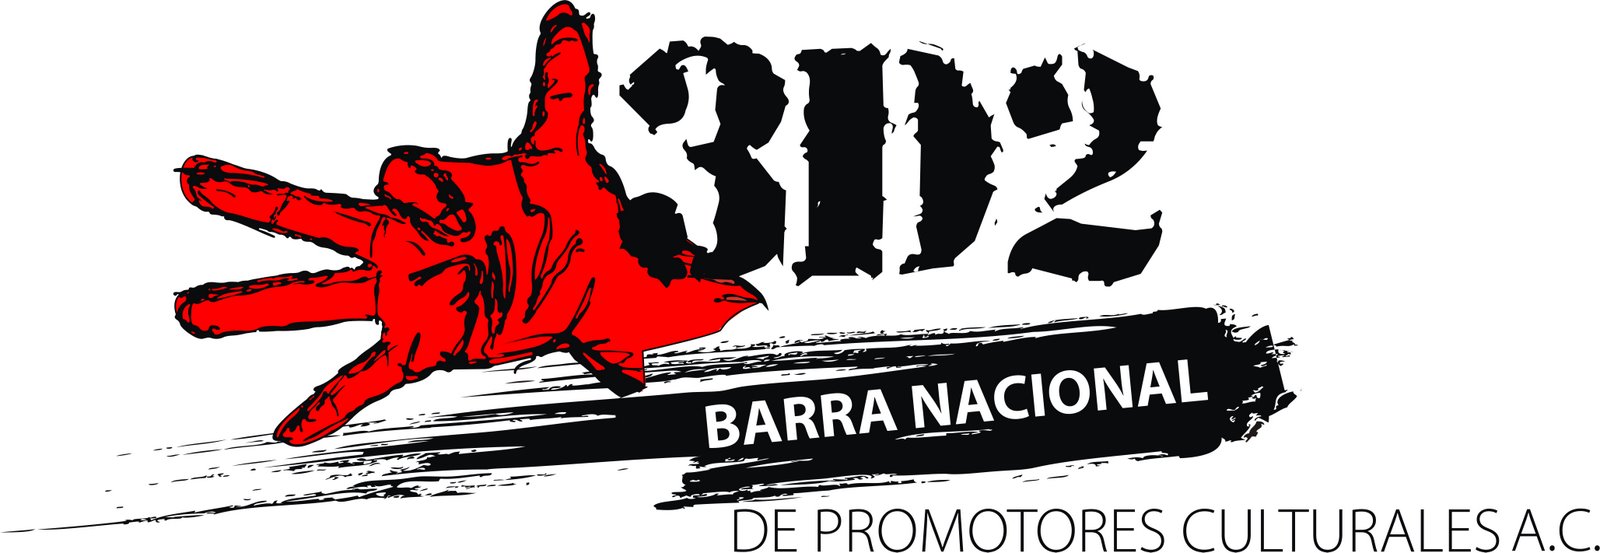 [JPG+ALTA+Barra+Nacional+de+Promotores+Culturales.jpg]